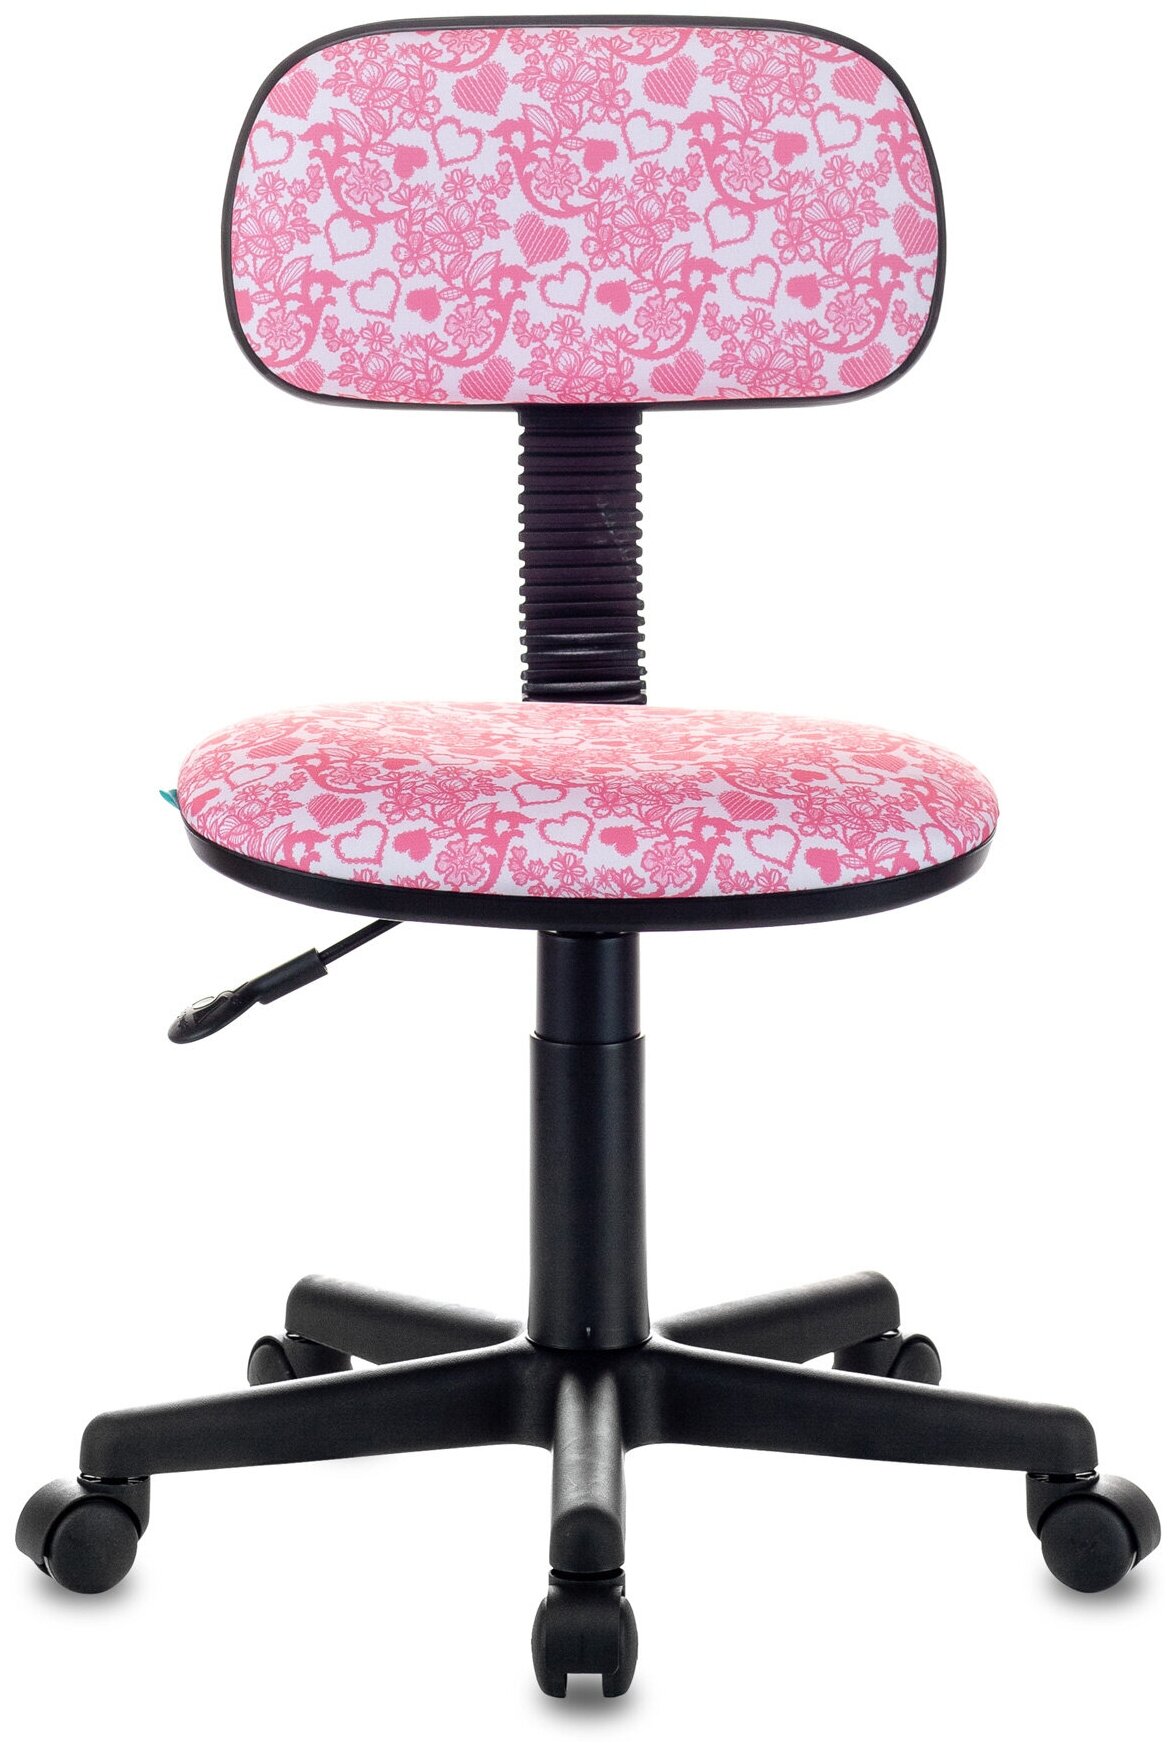 Кресло детское CH-201NX розовый сердца Hearts-Pk крестовина пластик / Компьютерное кресло для ребенка, школьника, подростка - фотография № 3